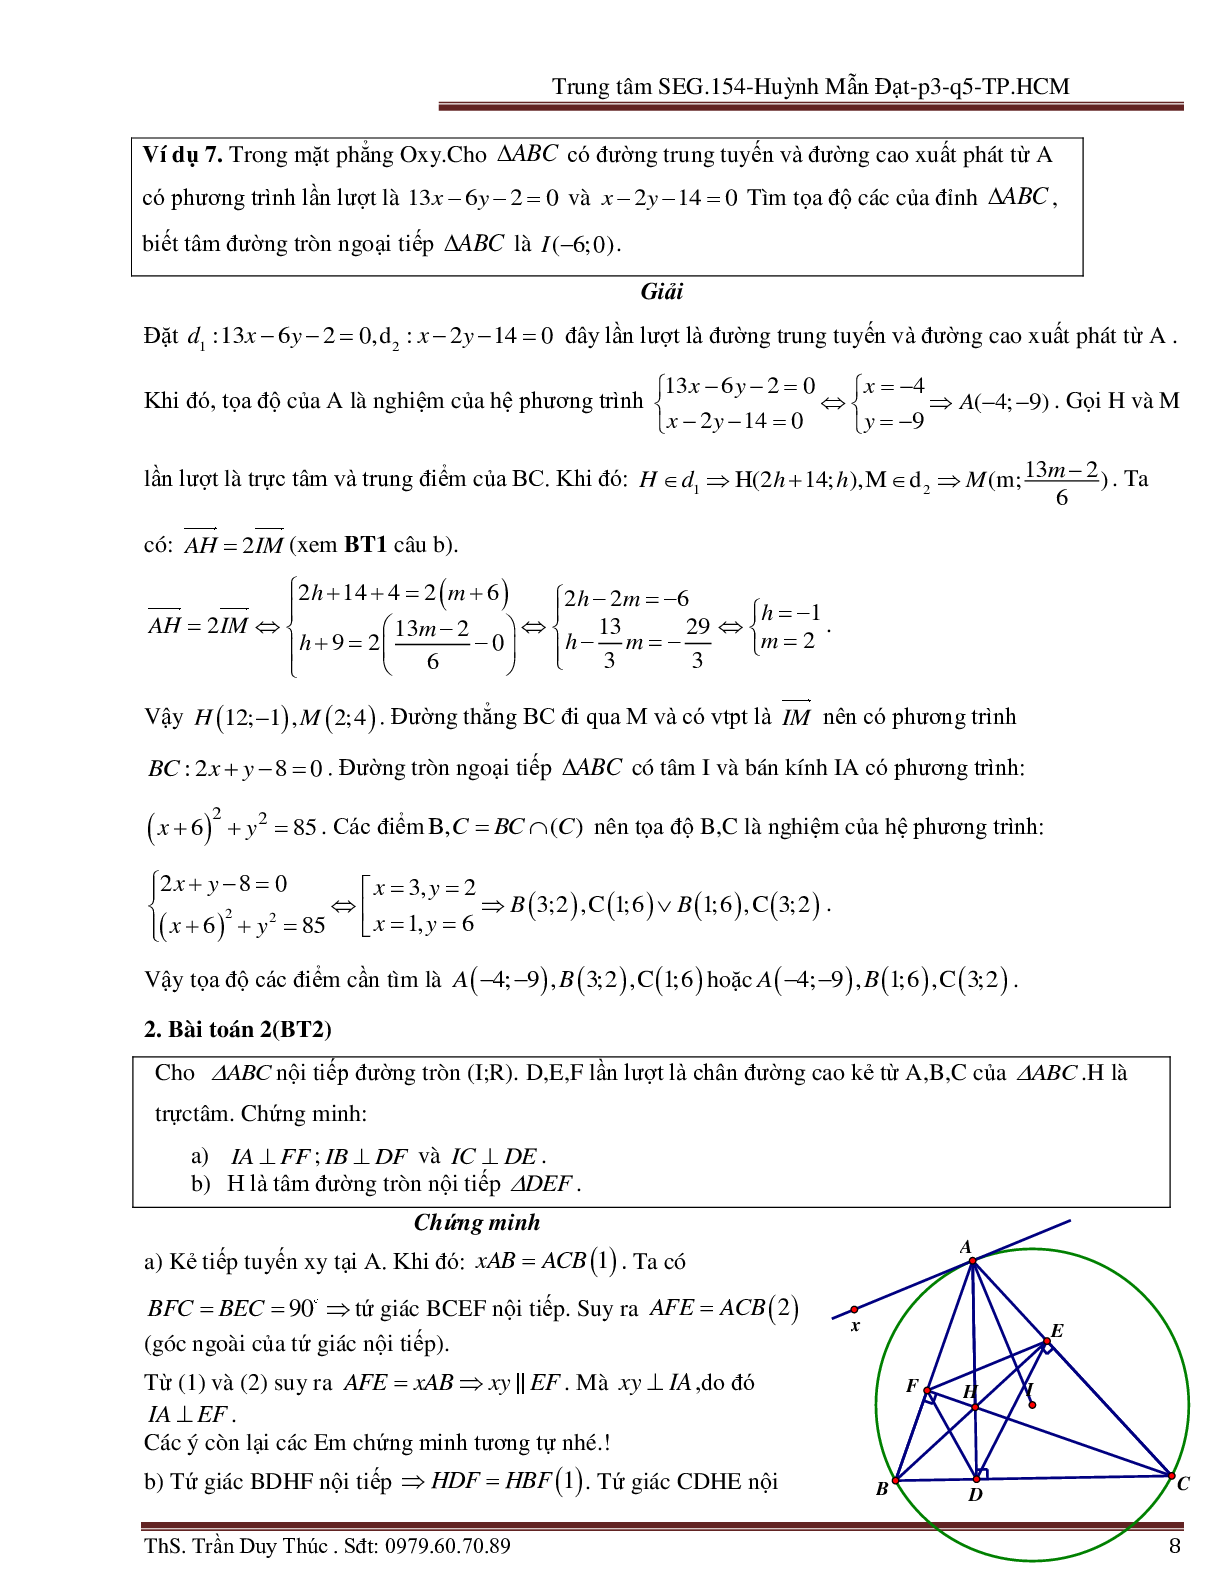 Vận dụng tính chất hình phẳng để giải bài toán Oxy liên quan đến đường tròn (trang 8)